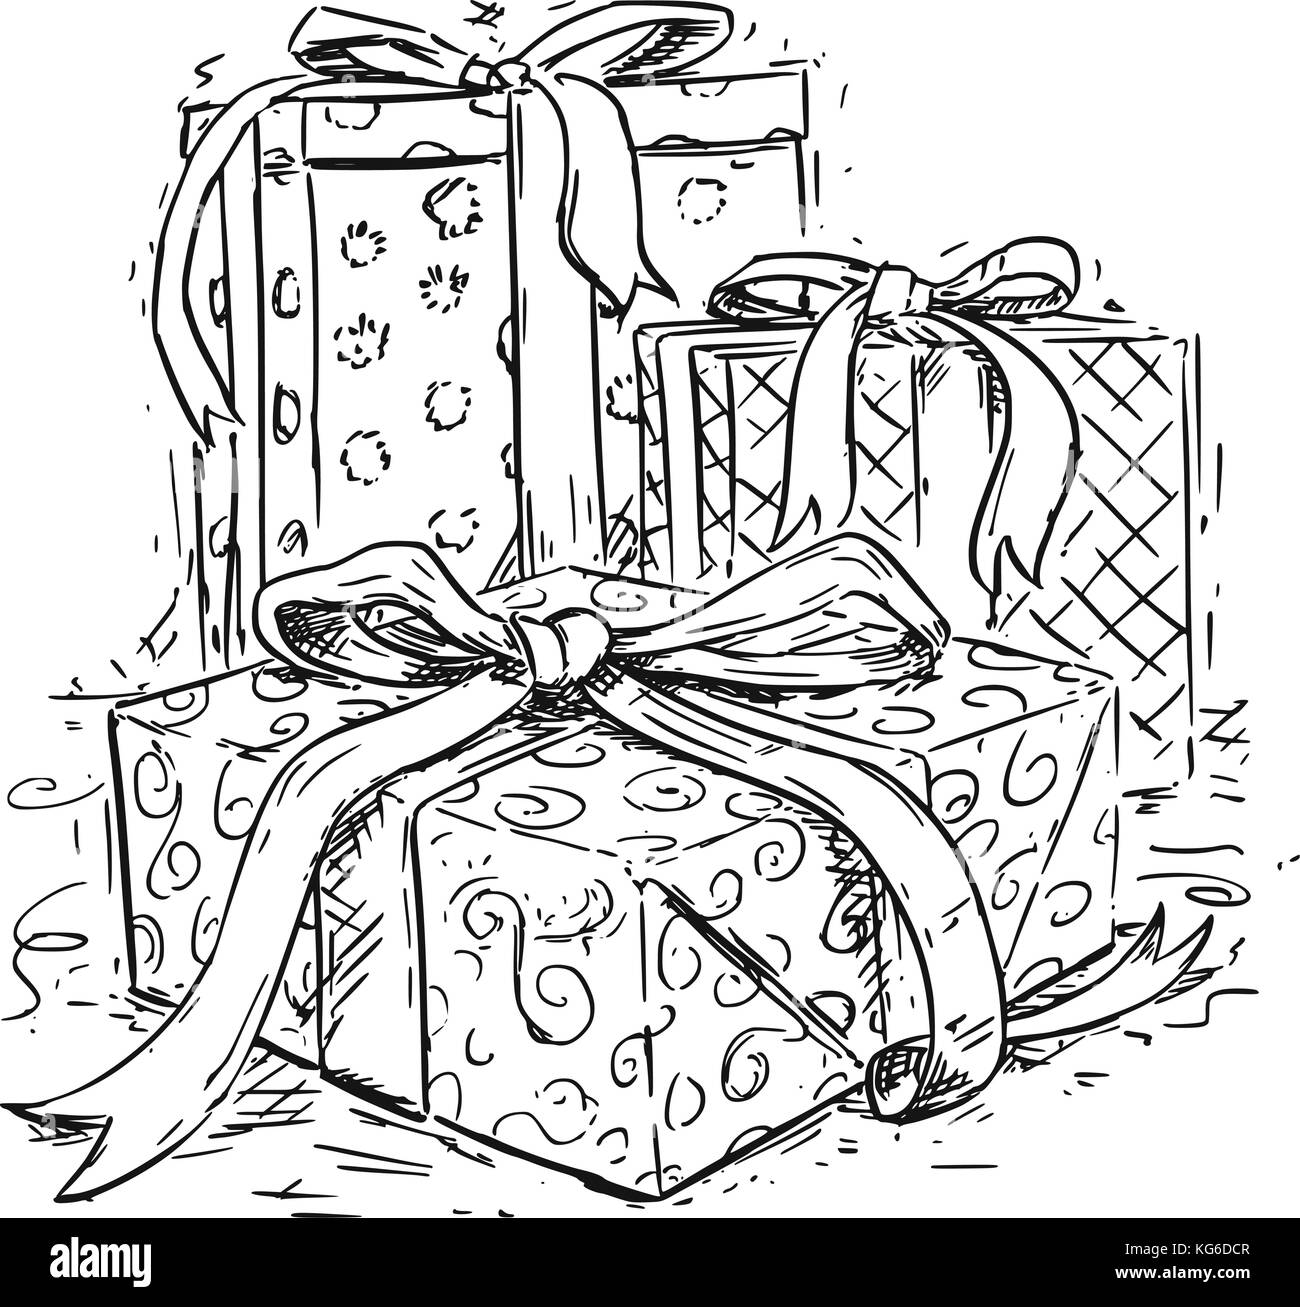 Vektor Zeichnung Abbildung: drei Weihnachten Geschenkboxen mit Band und dekorative wickeln. Stock Vektor